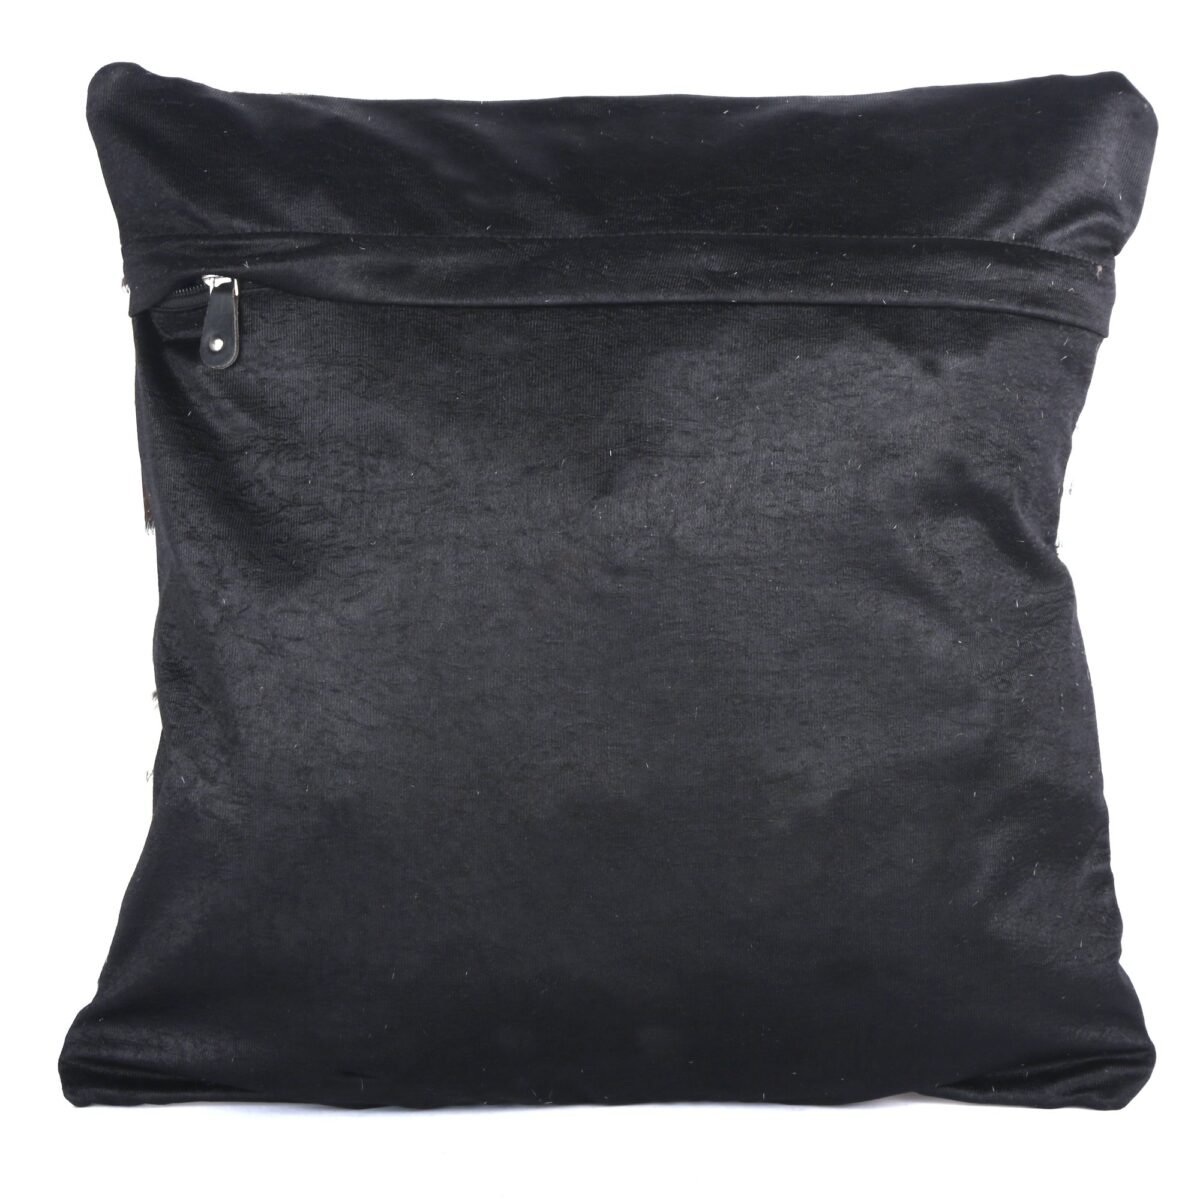 Slideup Leather Bags Australia